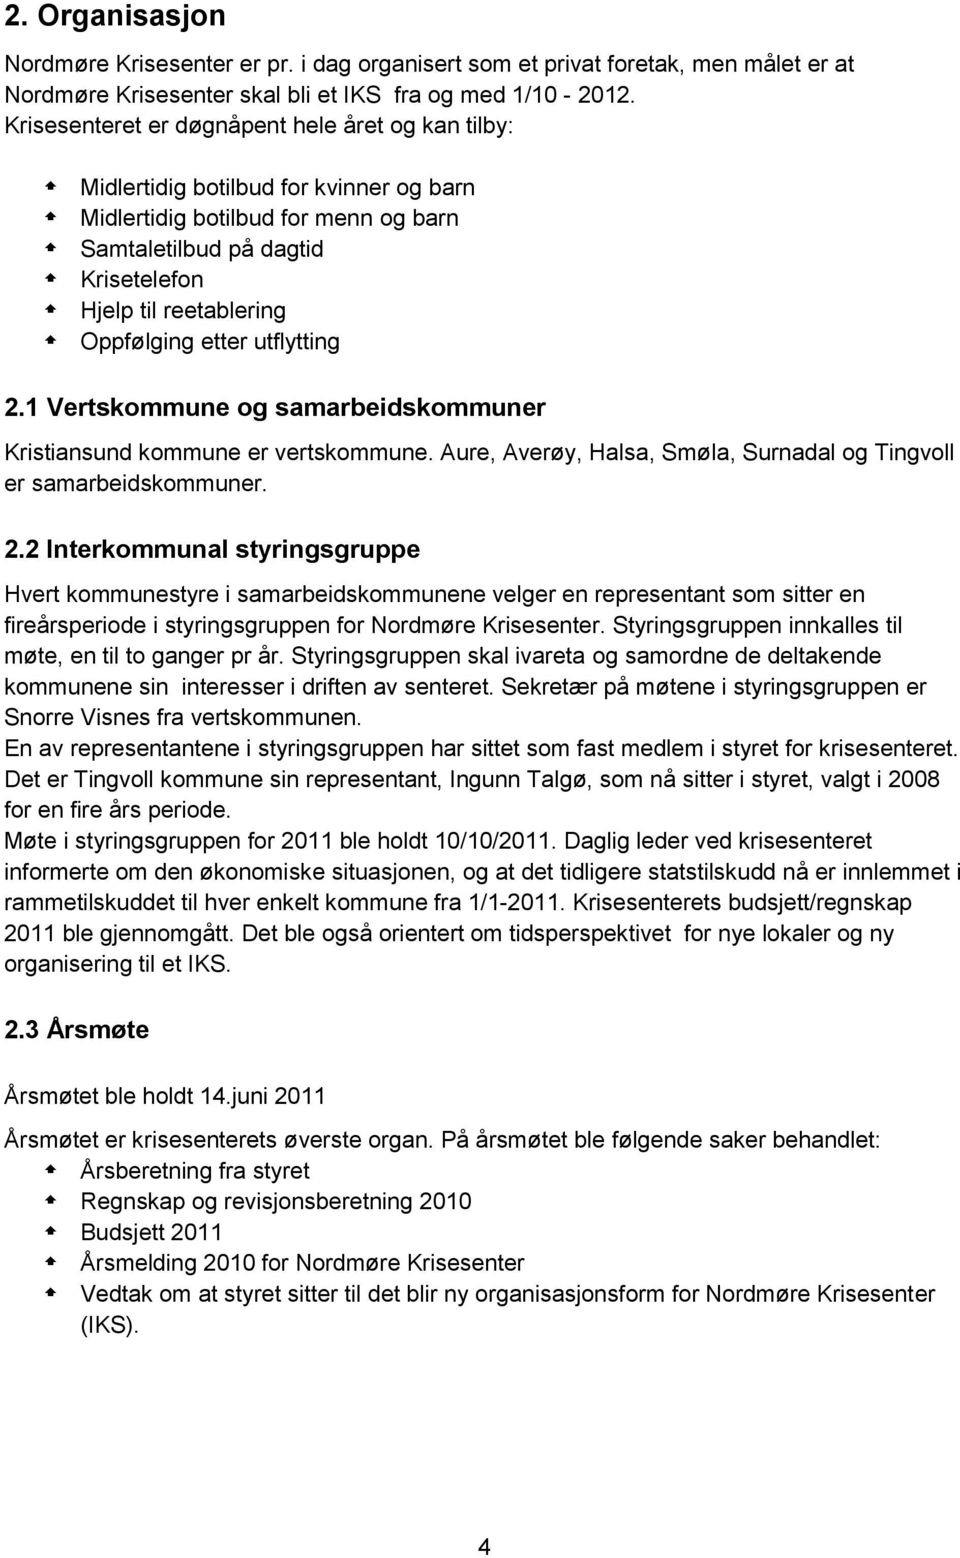 Oppfølging etter utflytting 2.1 Vertskommune og samarbeidskommuner Kristiansund kommune er vertskommune. Aure, Averøy, Halsa, Smøla, Surnadal og Tingvoll er samarbeidskommuner. 2.2 Interkommunal styringsgruppe Hvert kommunestyre i samarbeidskommunene velger en representant som sitter en fireårsperiode i styringsgruppen for Nordmøre Krisesenter.